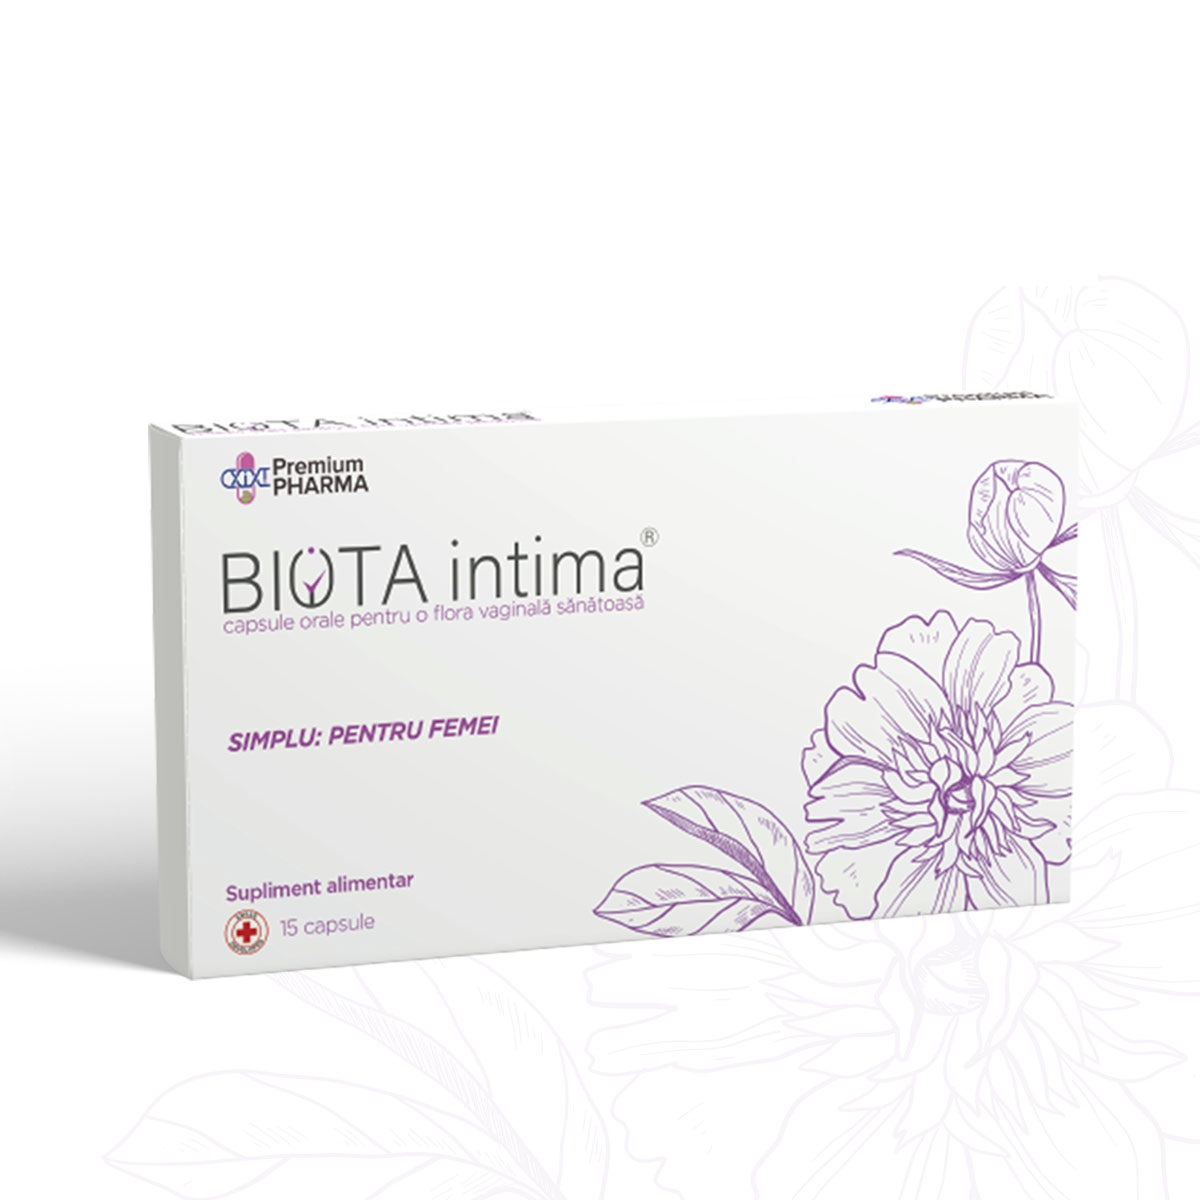 Biota intima capsule, 15 capsule, Premium Pharma